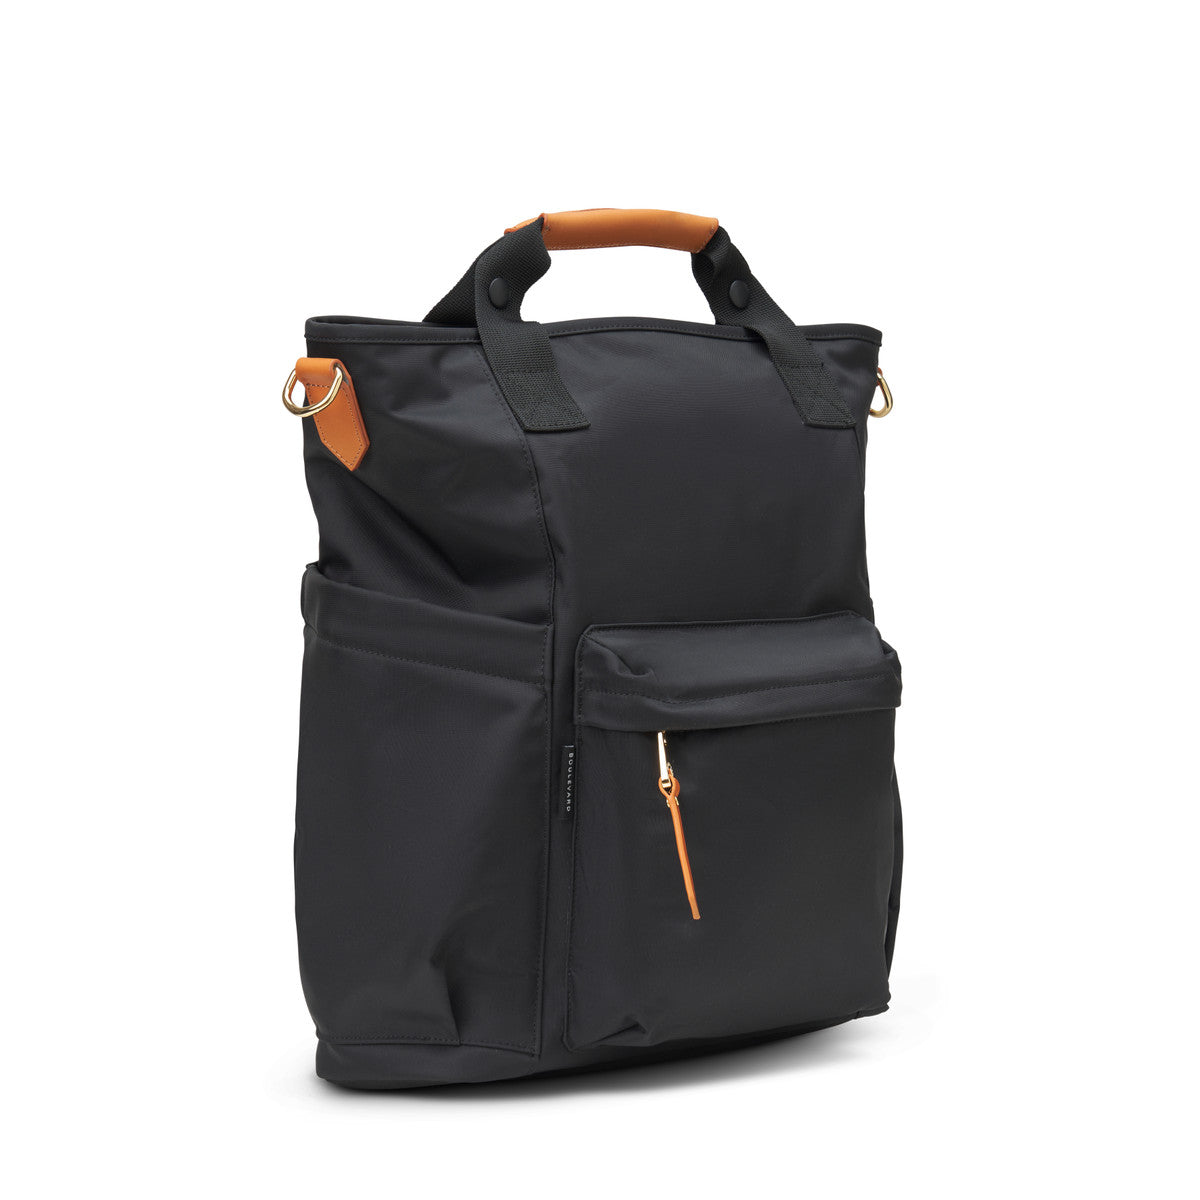 Brooklyn Convertible Laptop Backpack - Black (Ships in 1-2 Weeks)